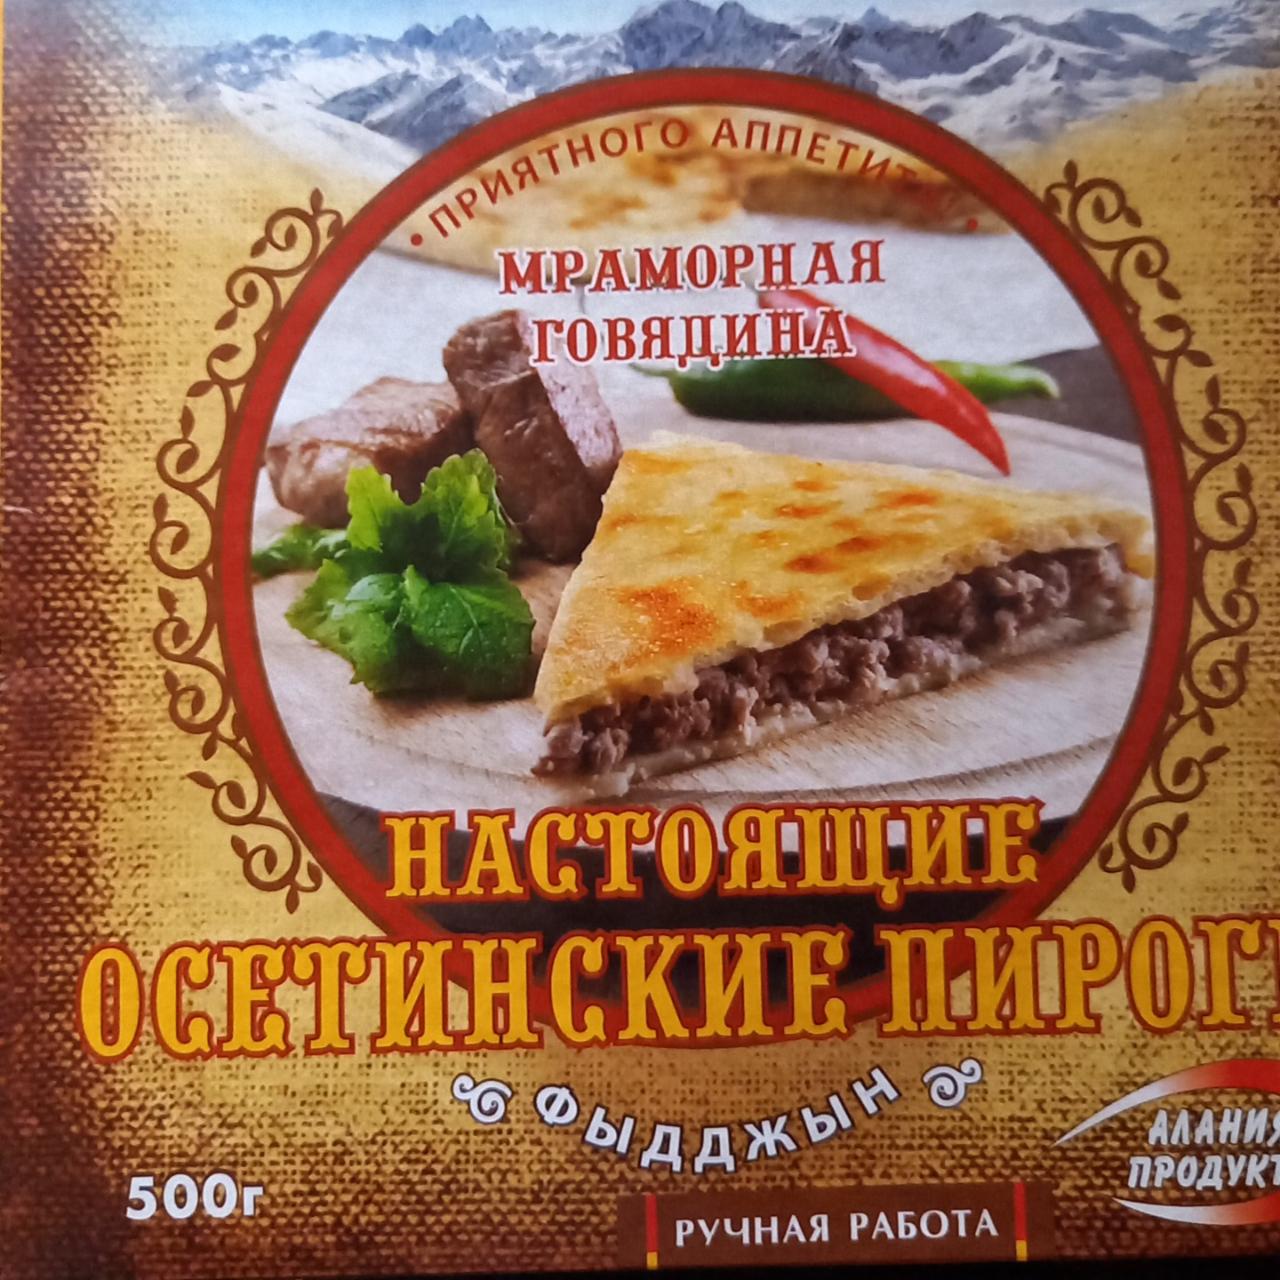 Фото - Пирог Осетинский Фыдджын мраморная говядина замороженный Алания Продукт